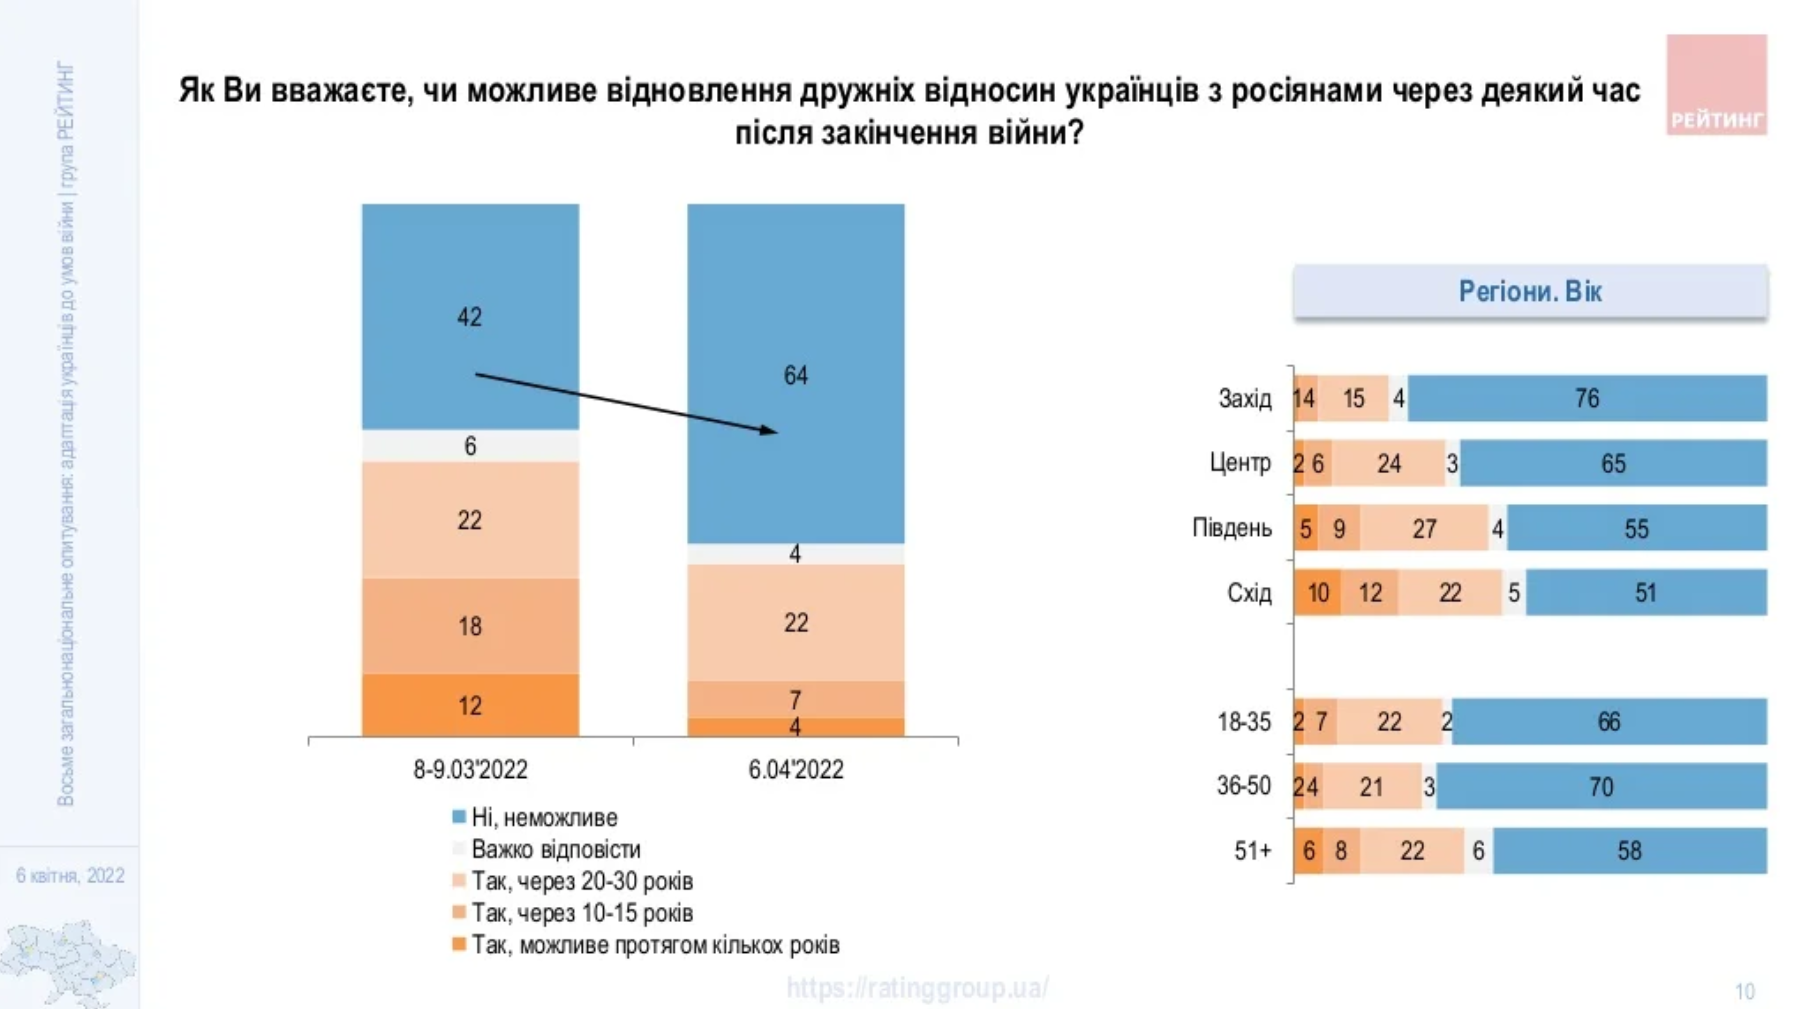 Більшість українців вважають неможливим відновлення дружніх стосунків з росіянами